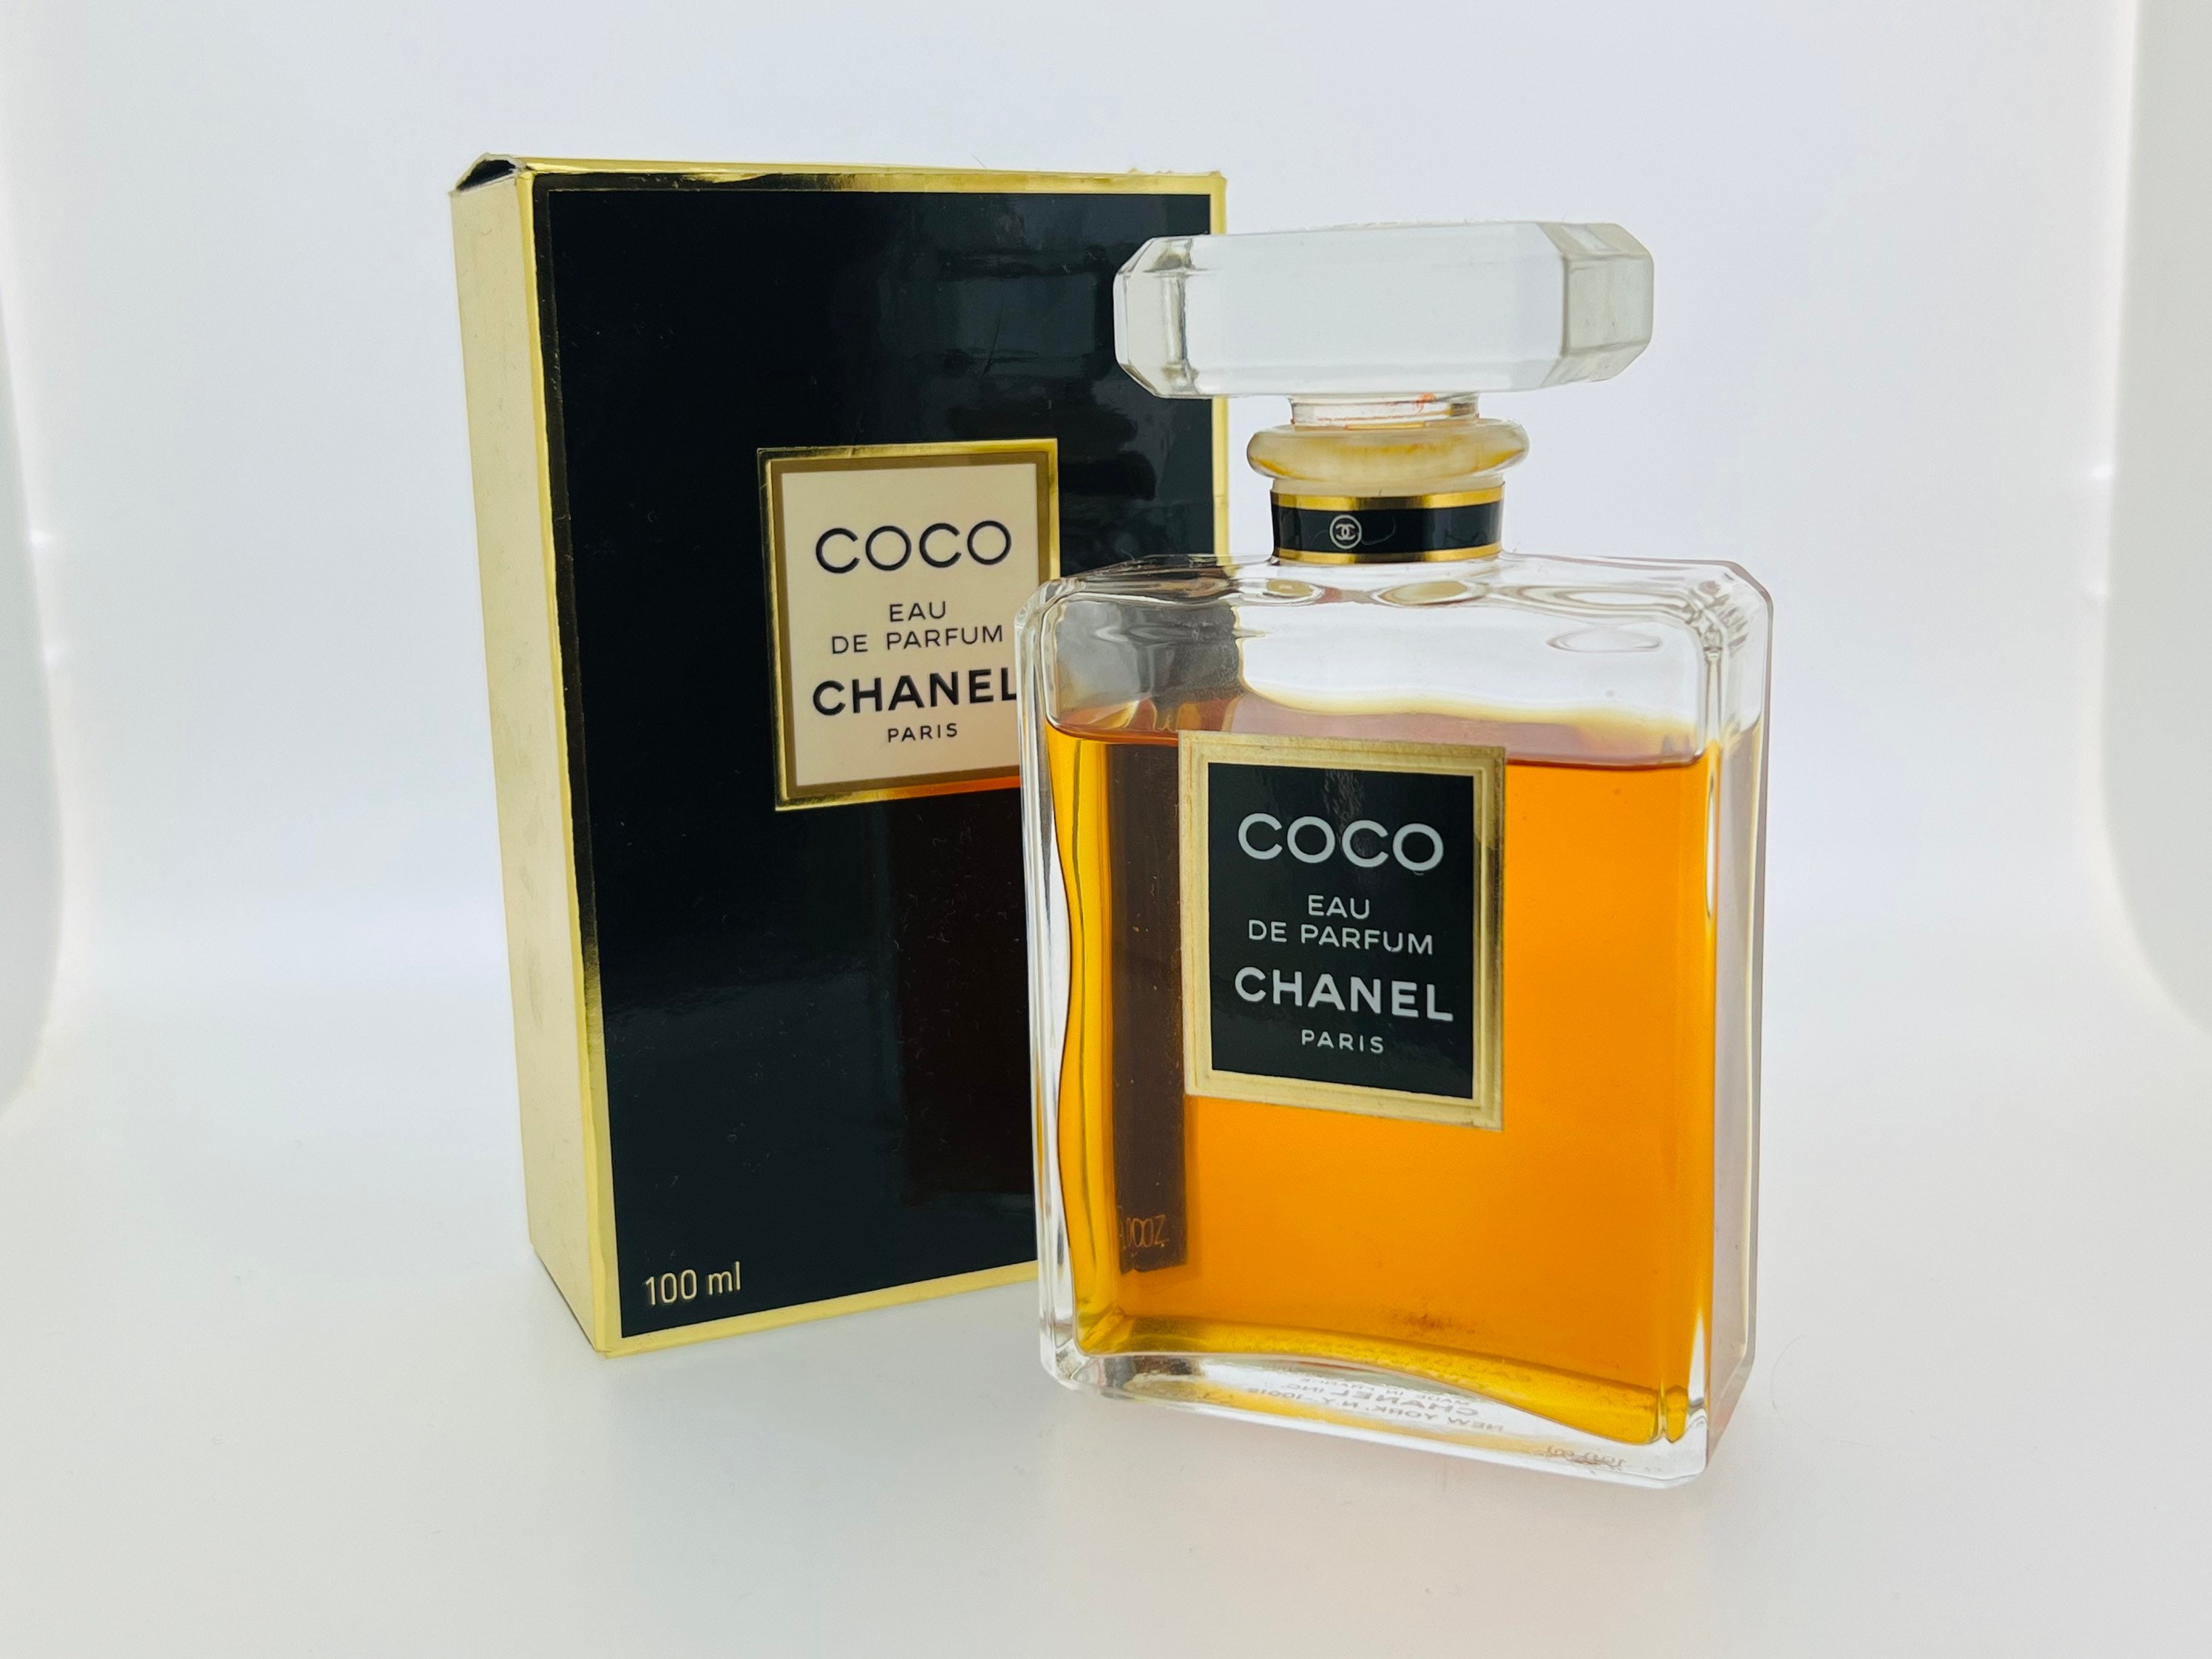 Vintage Old Coco Chanel Eau De Parfum Paris Empty Perfume Bottle Collectible